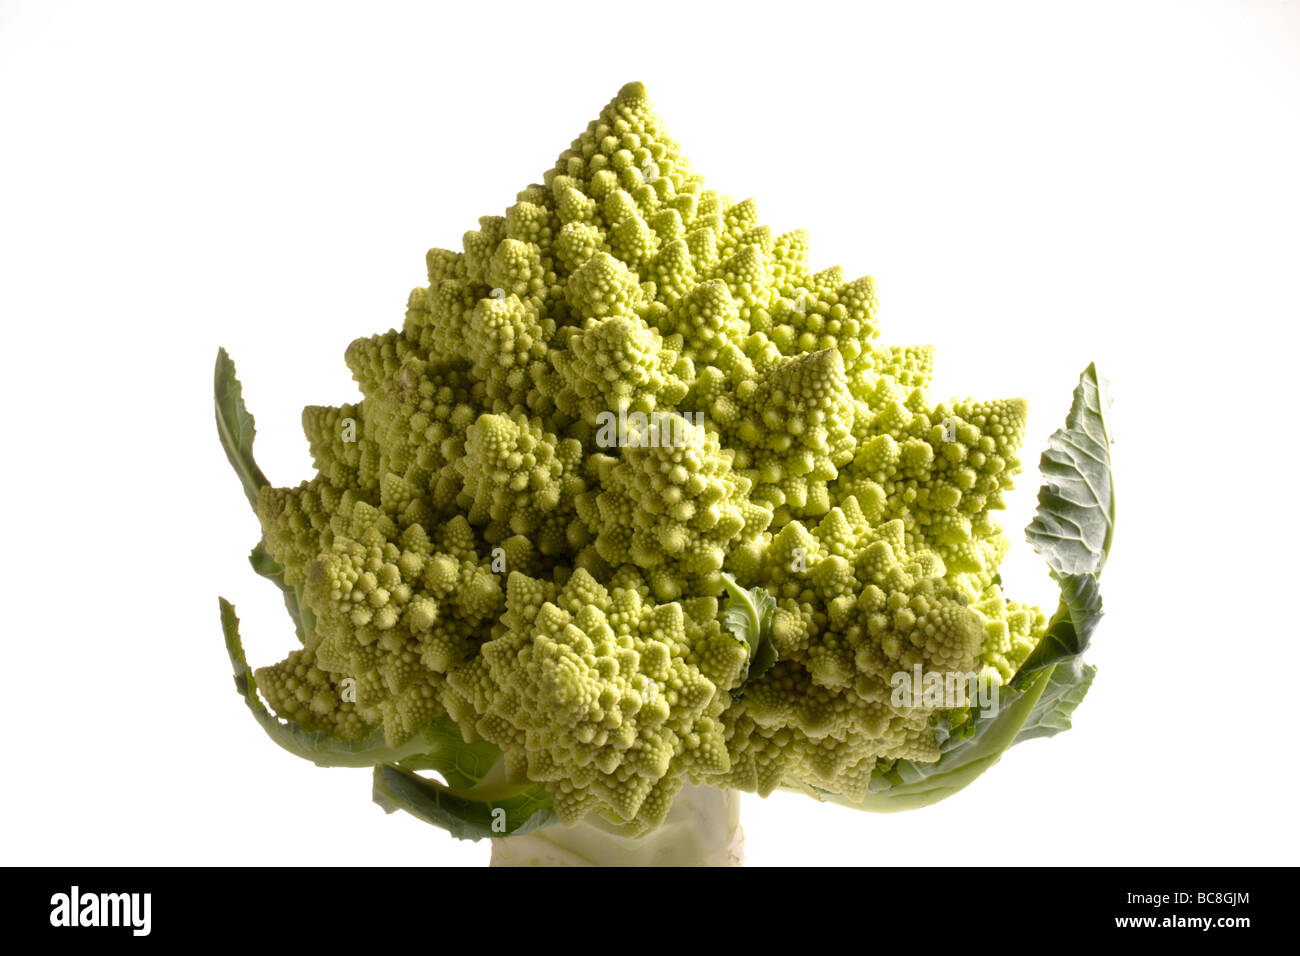 Green cauliflower,Romanesco cauliflower Stock Photo